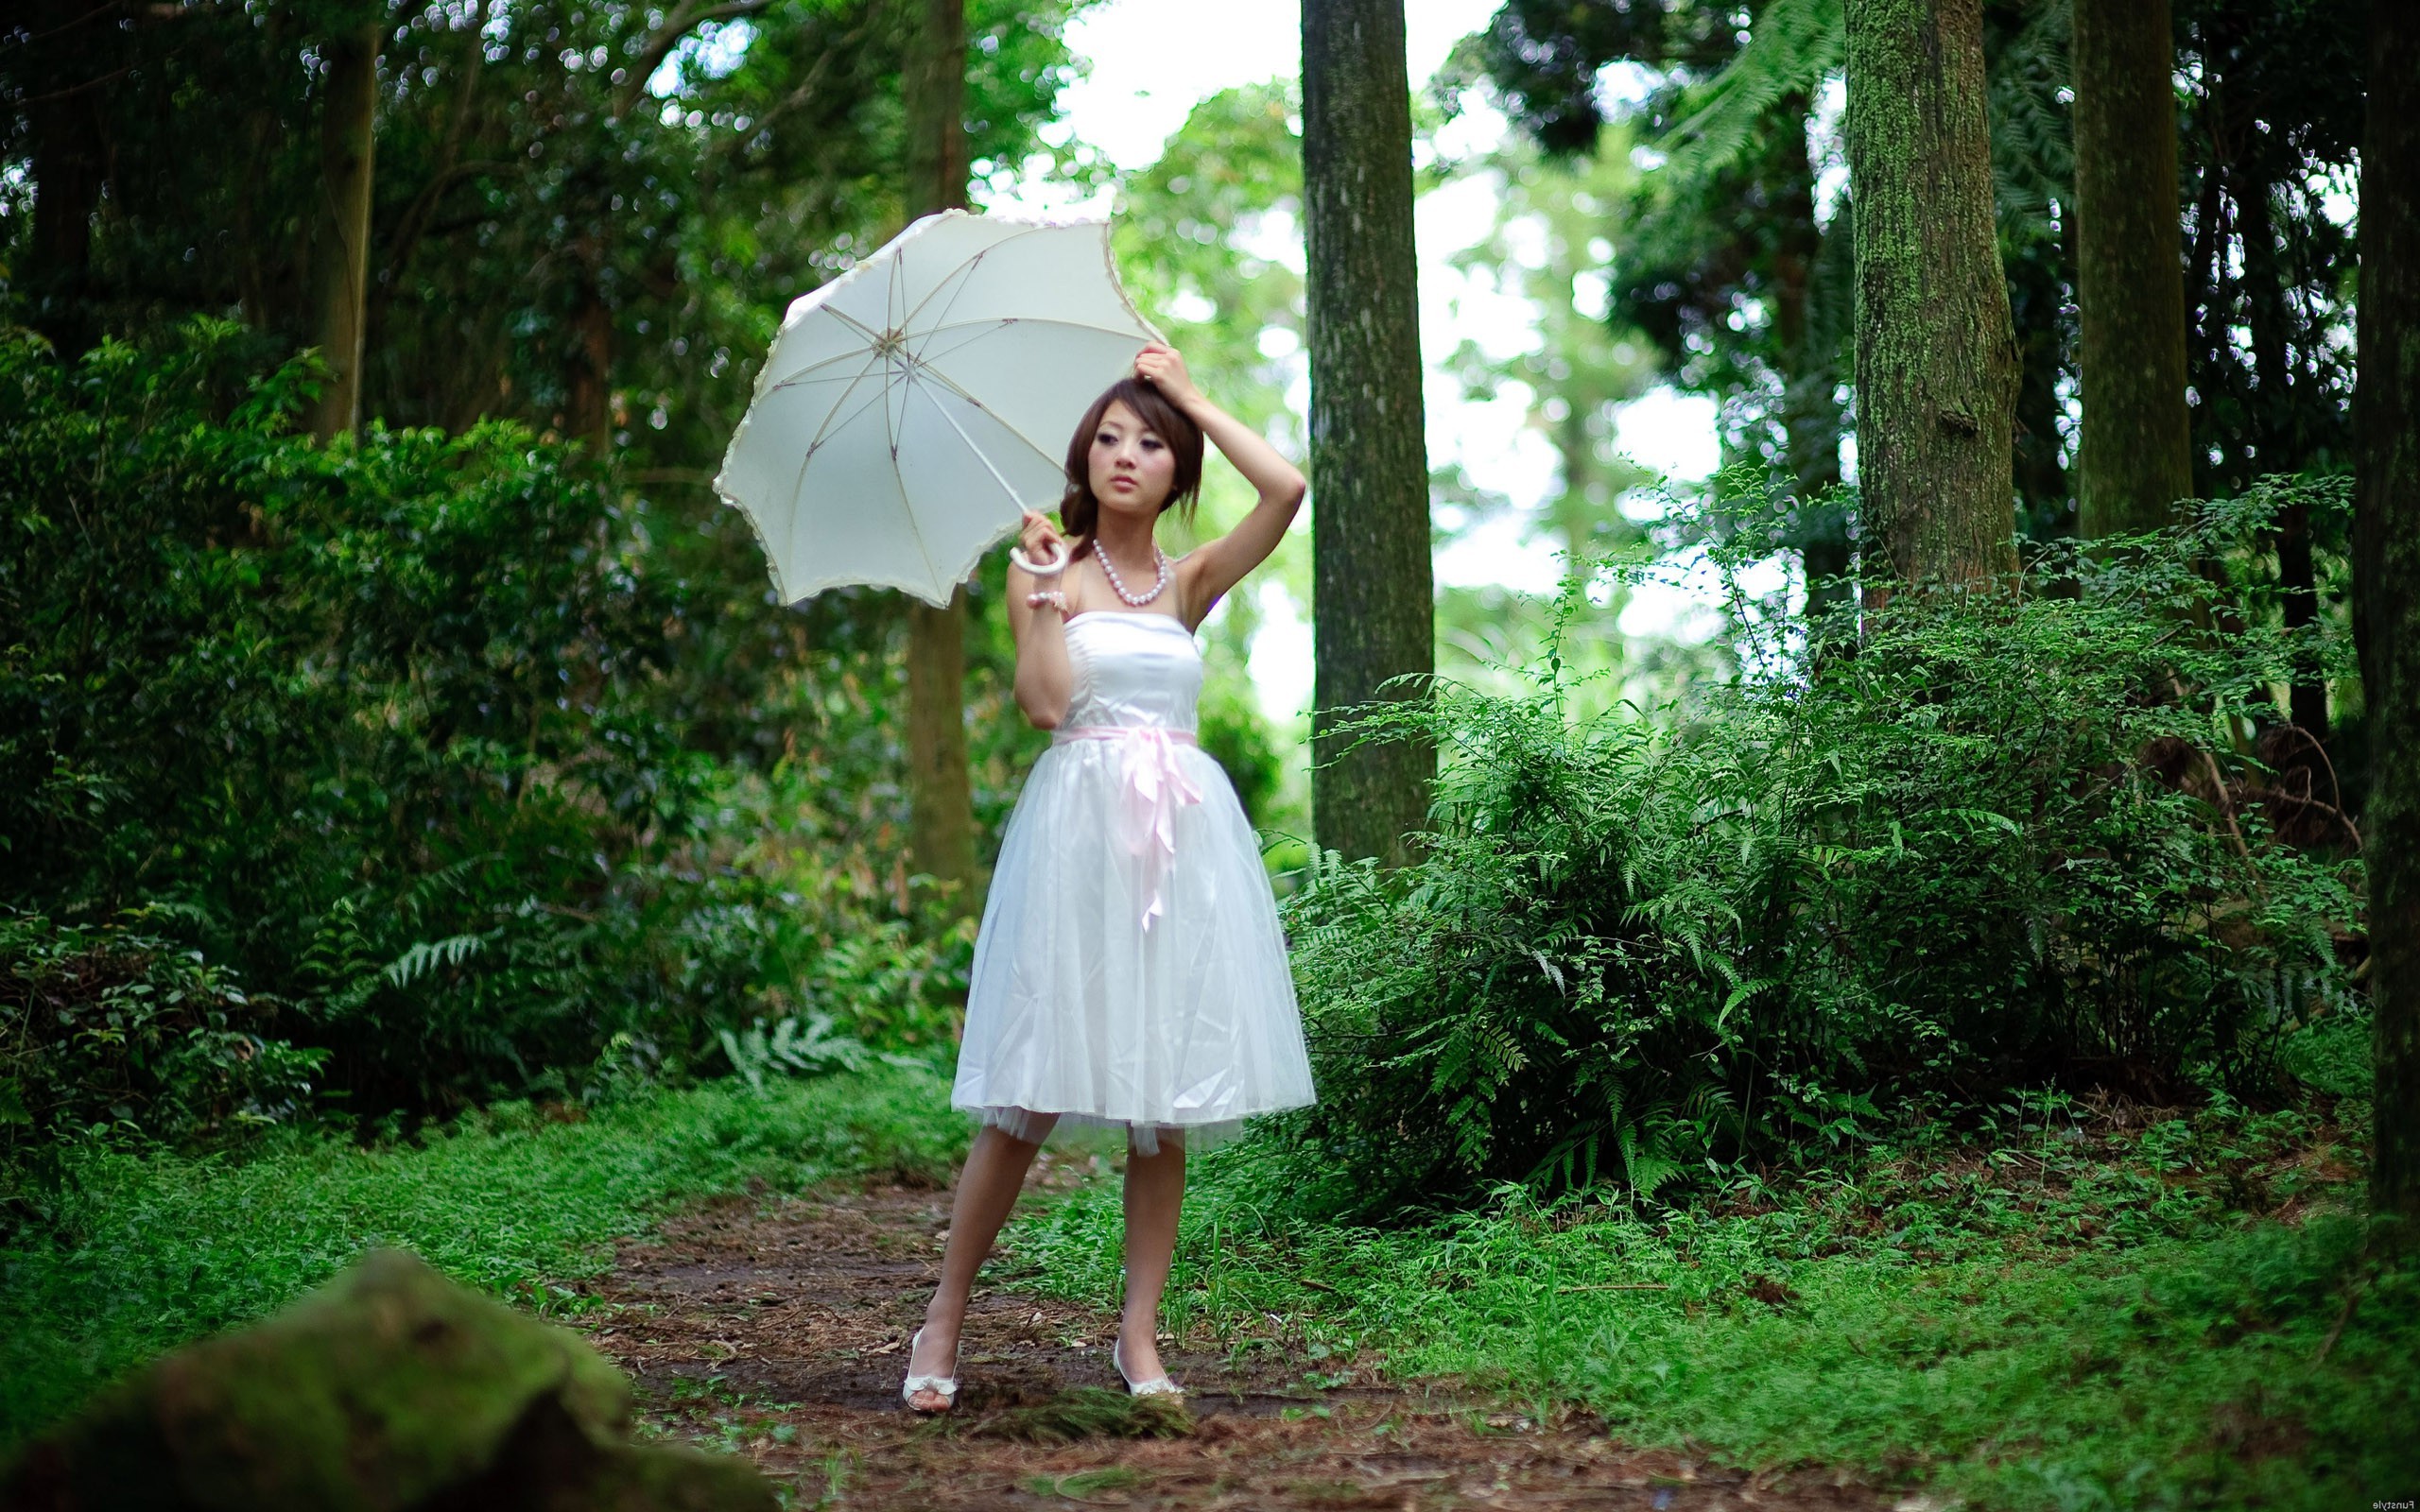 Asian, Women, Women Outdoors, White Dress, Umbrella Wallpaper